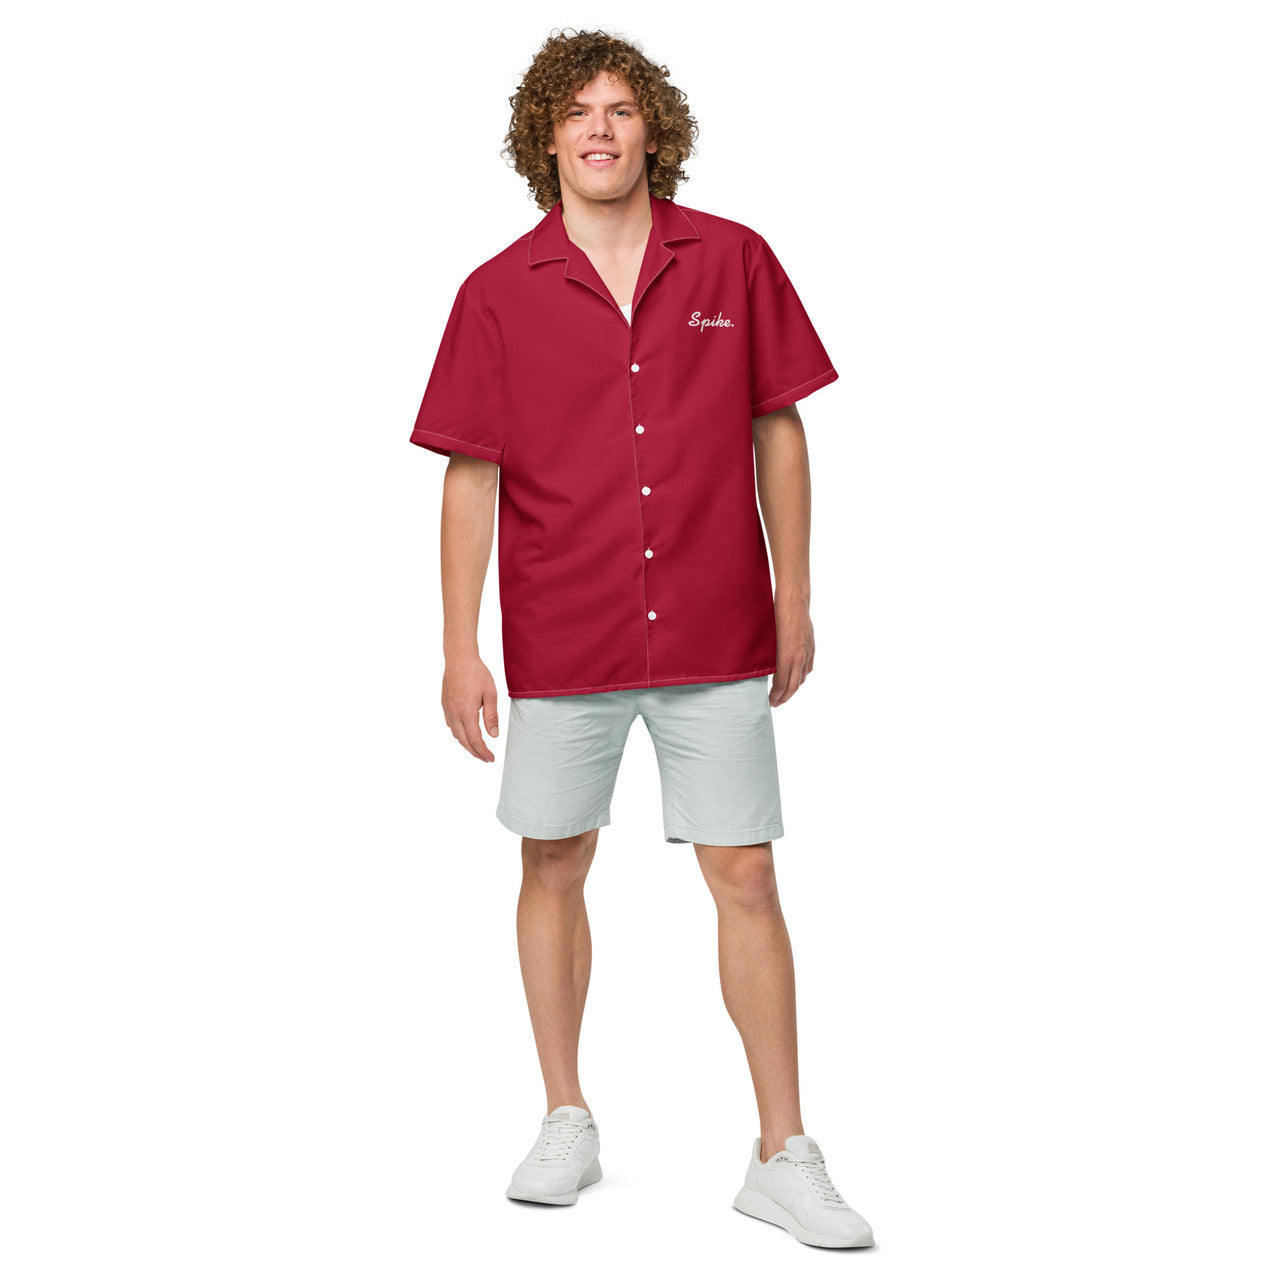 Red Chandler Bing KiSS Unisex button shirt - Spike Shirt Season 2 Friends